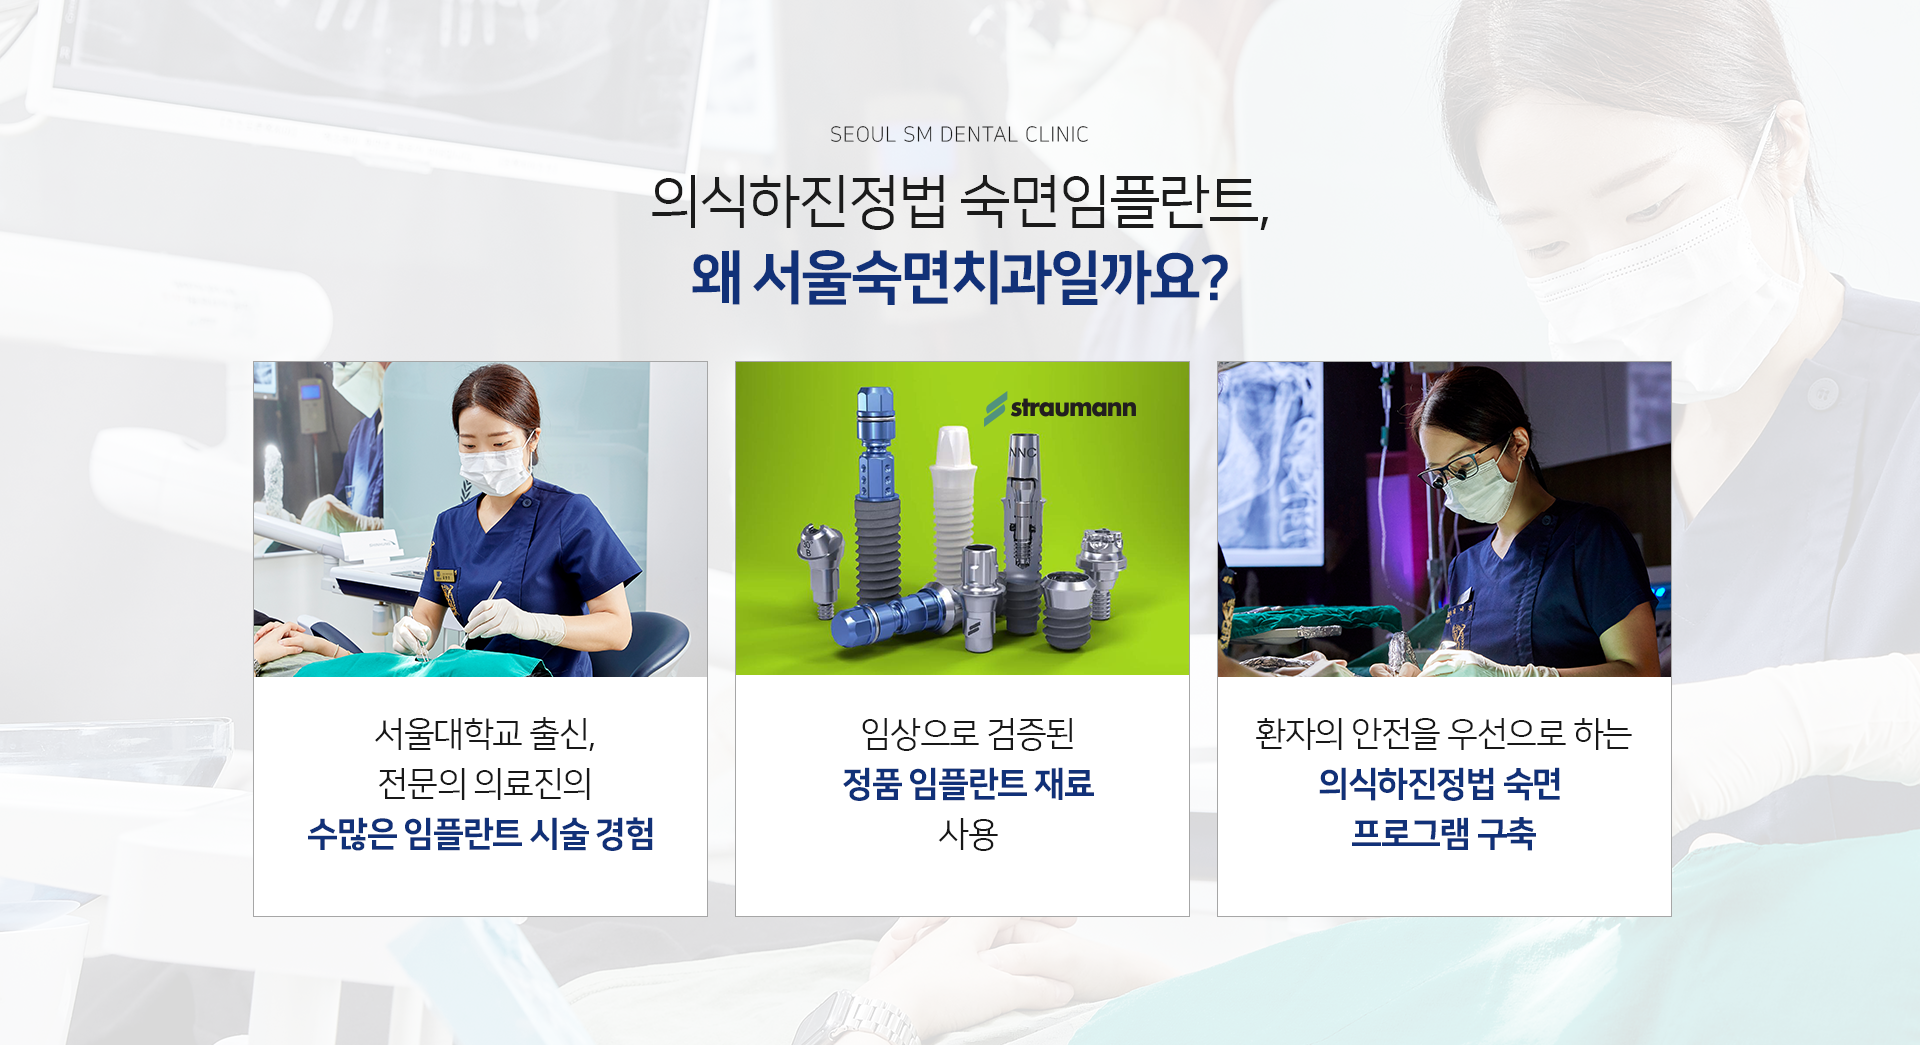 서울대학교-출신-전문의-의료진의-수많은-임플란트-수술-경험-임상으로-검증된-정품-임플란트-재료-사용 책임보증제도